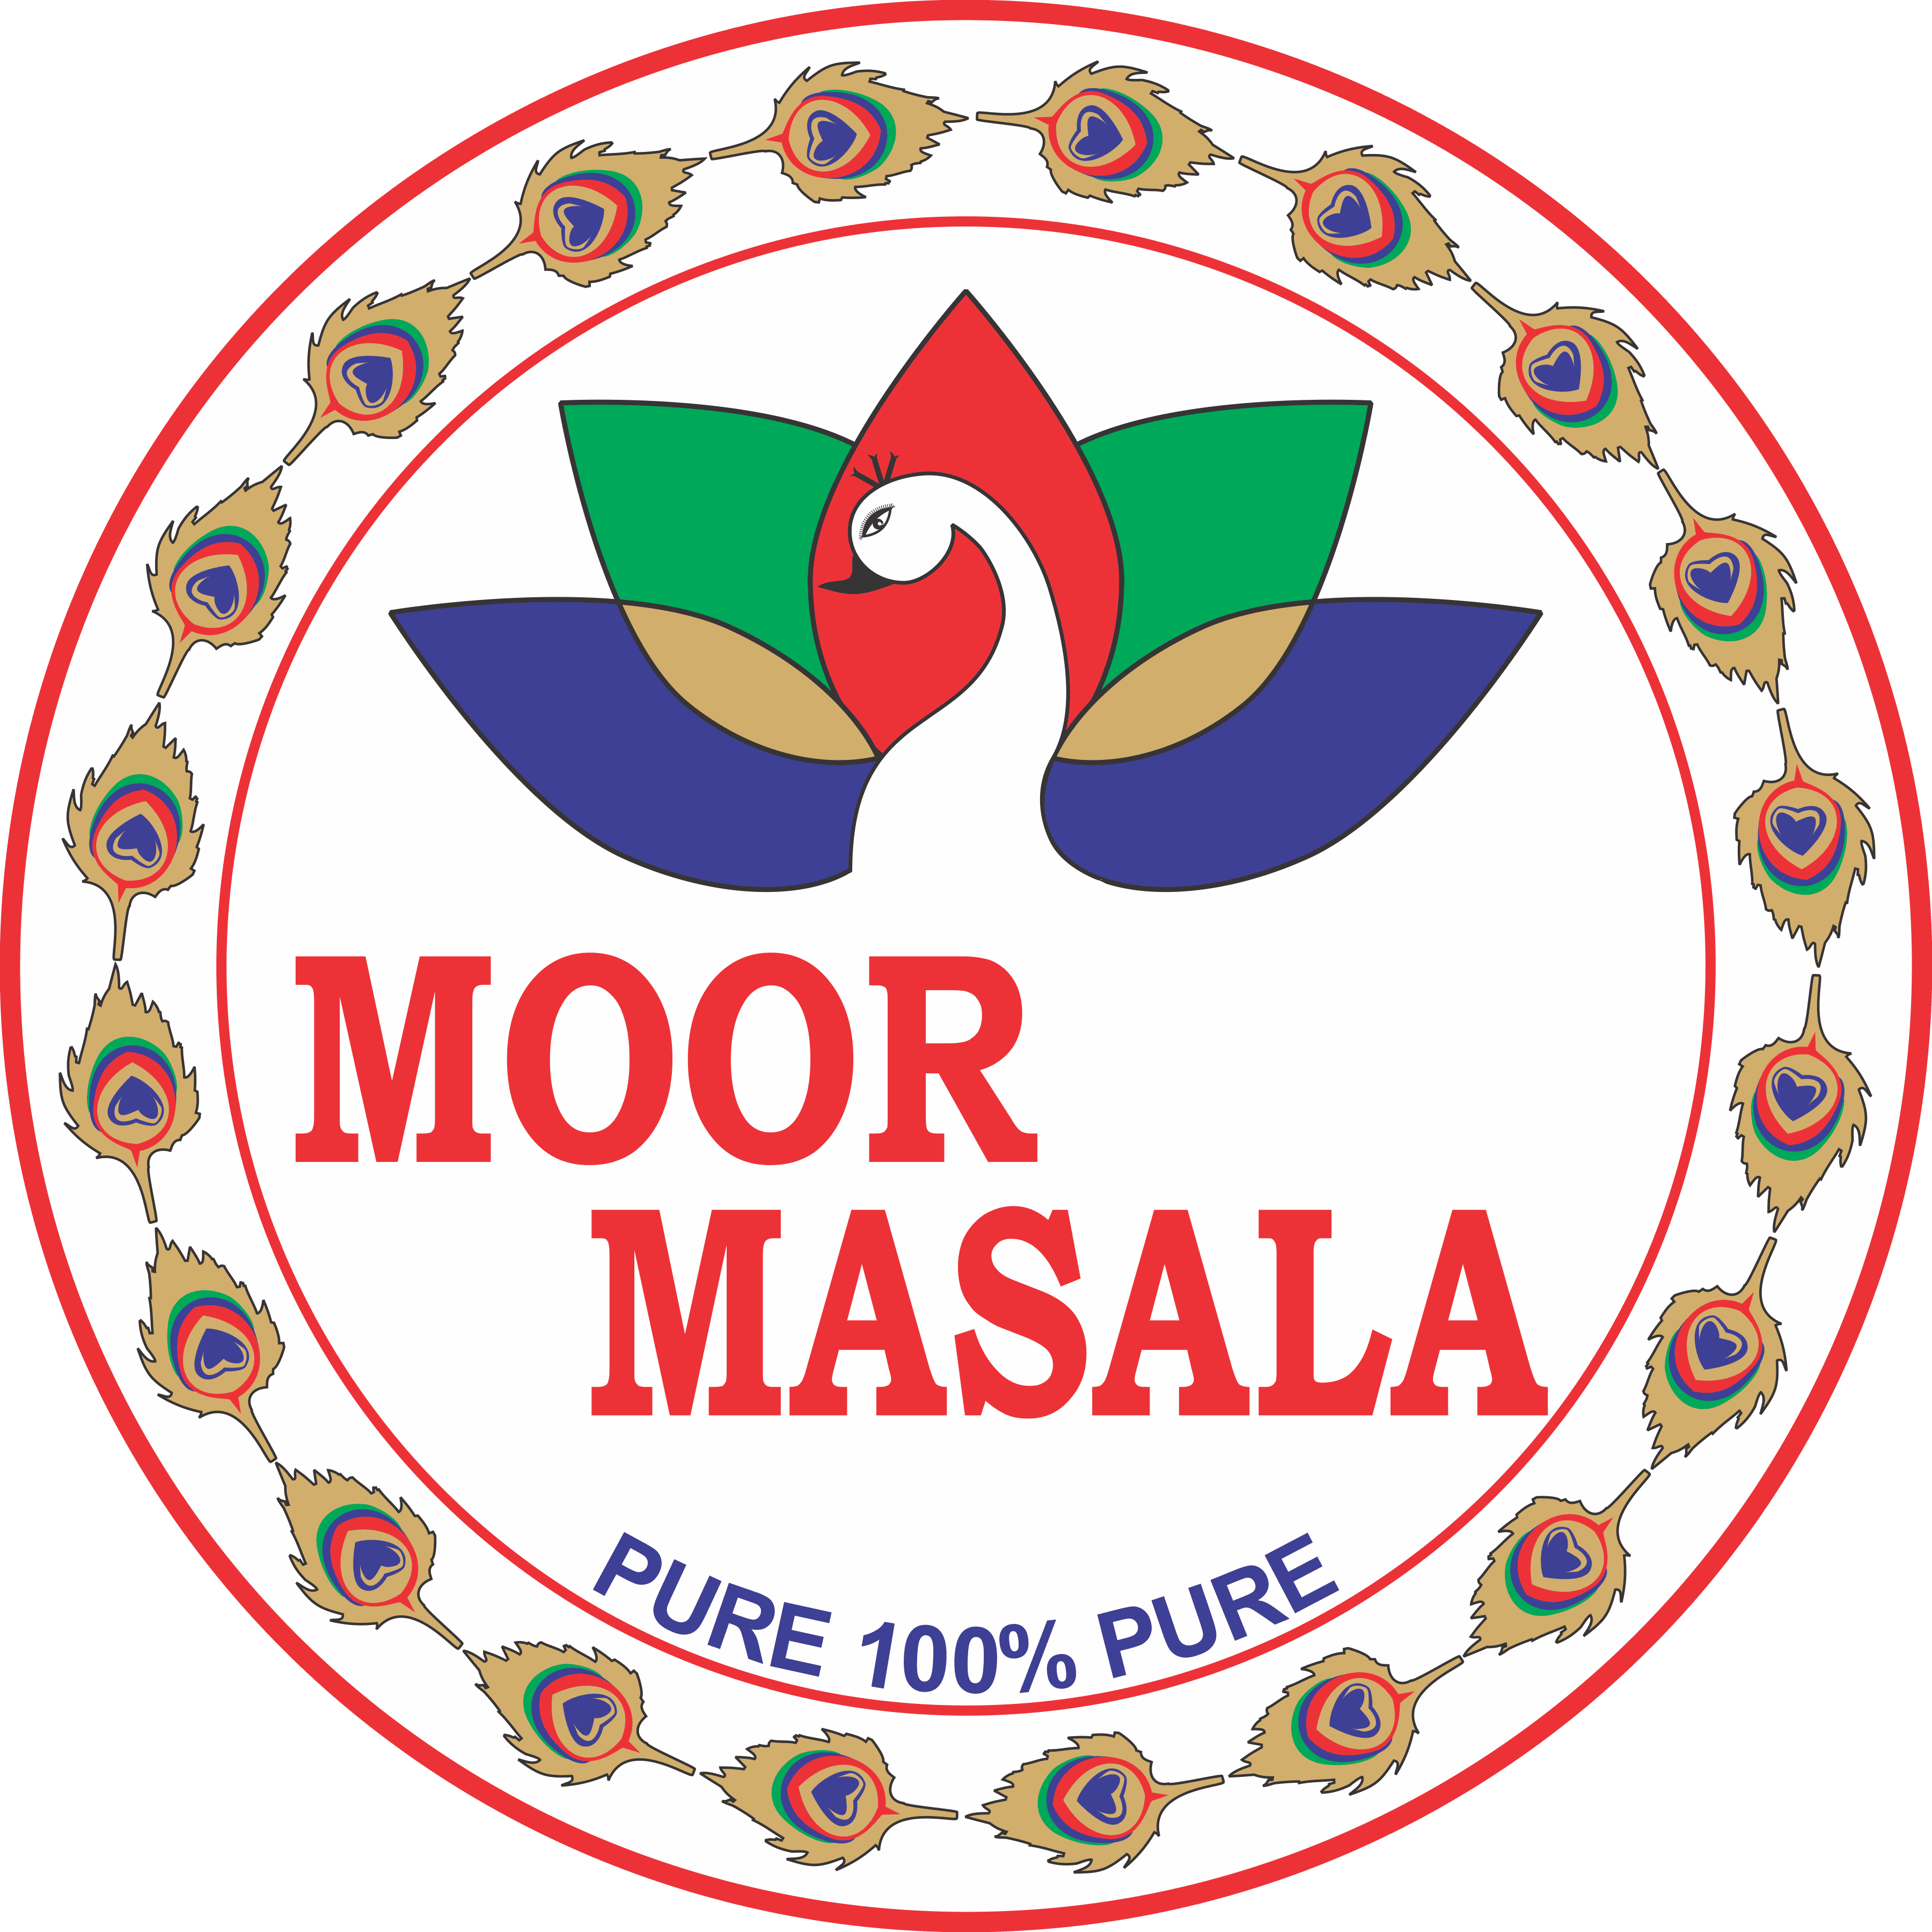 Moor Masala Udhyog